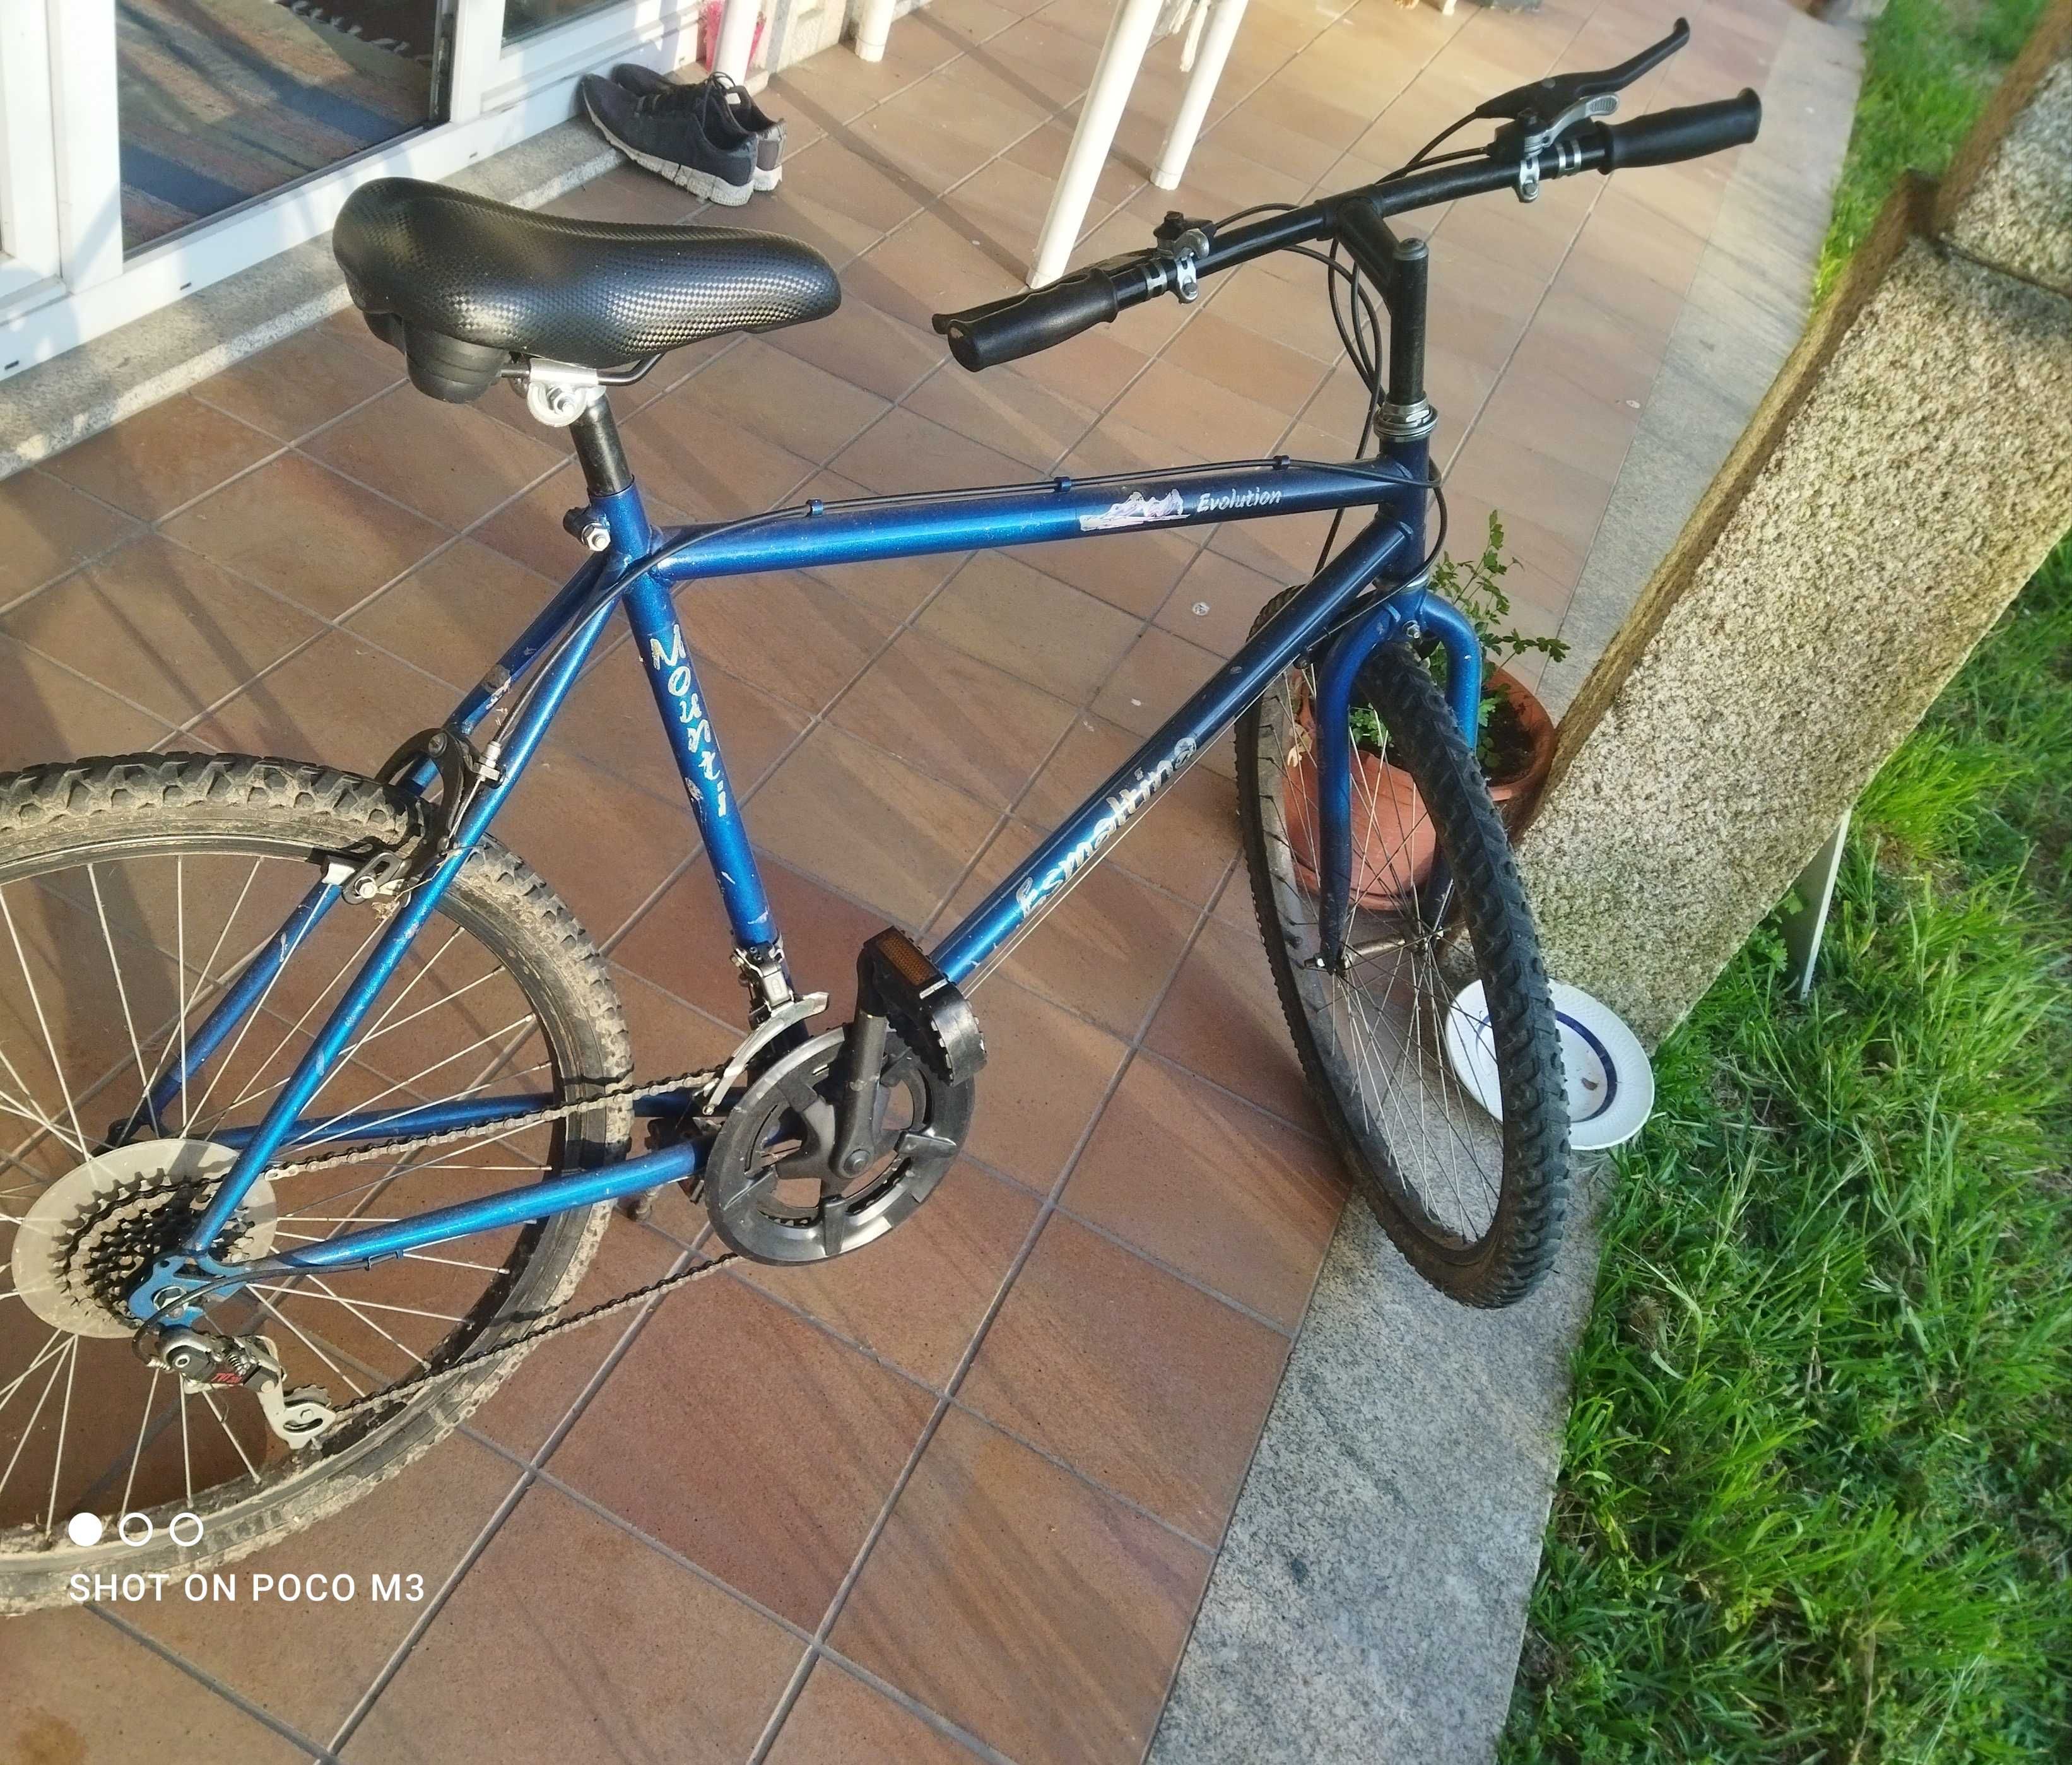 Bicicleta azul 10 euros